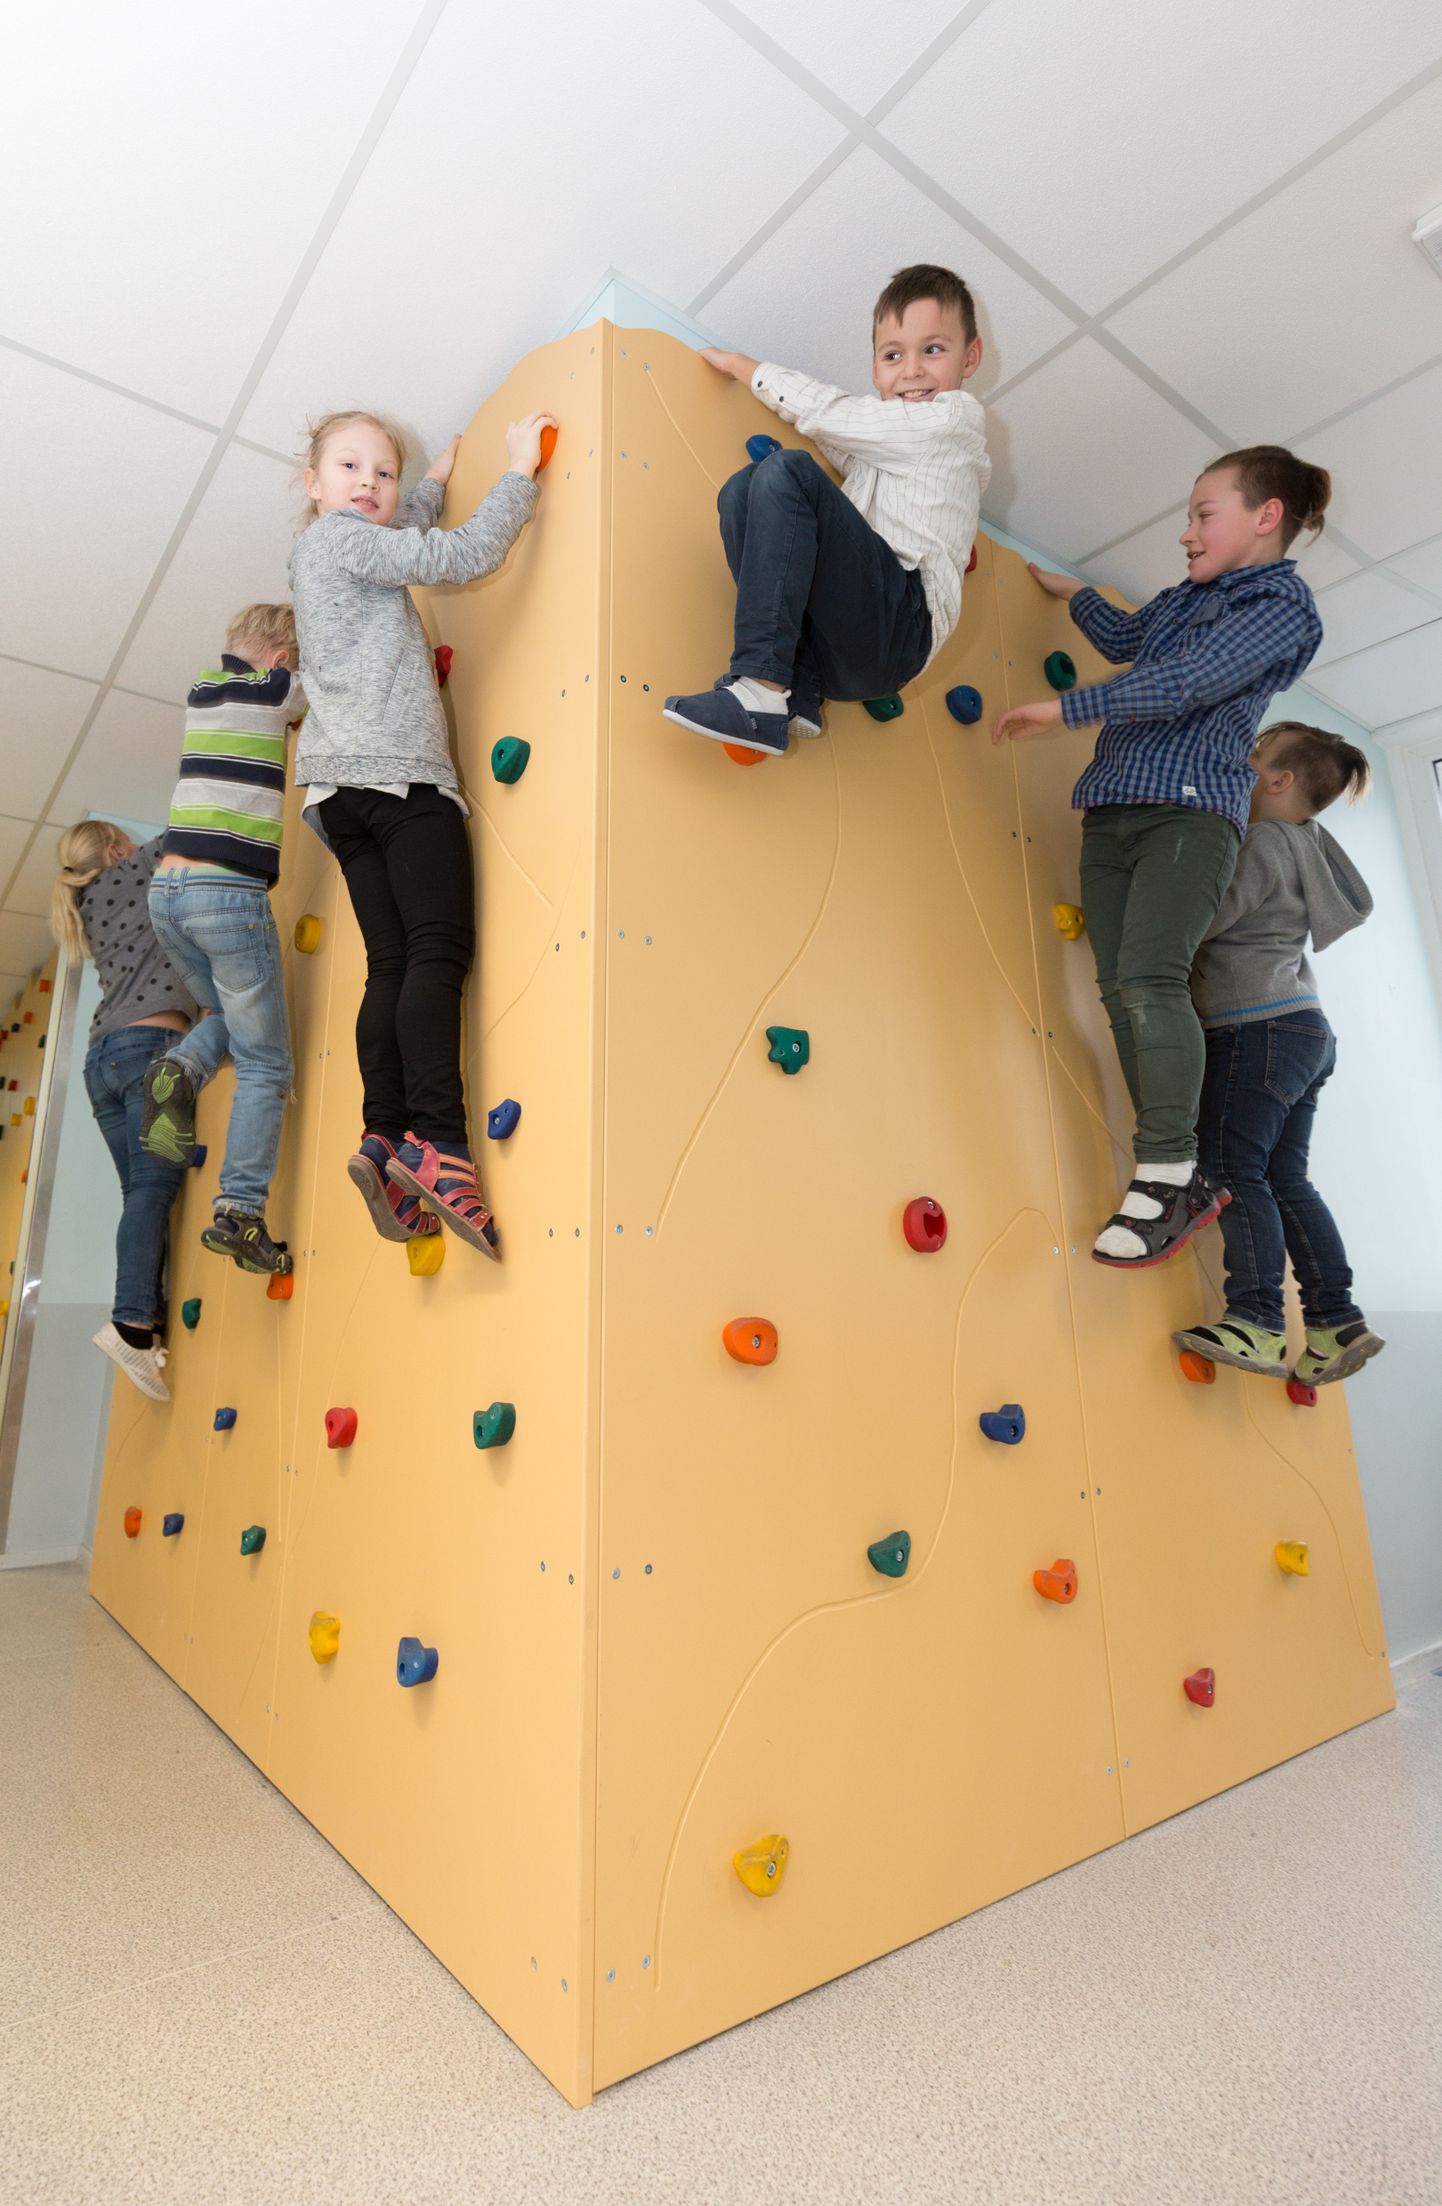 Viljandi Jakobsoni kooli koridori on pandud üles ronimissein ja see on laste seas väga populaarne.